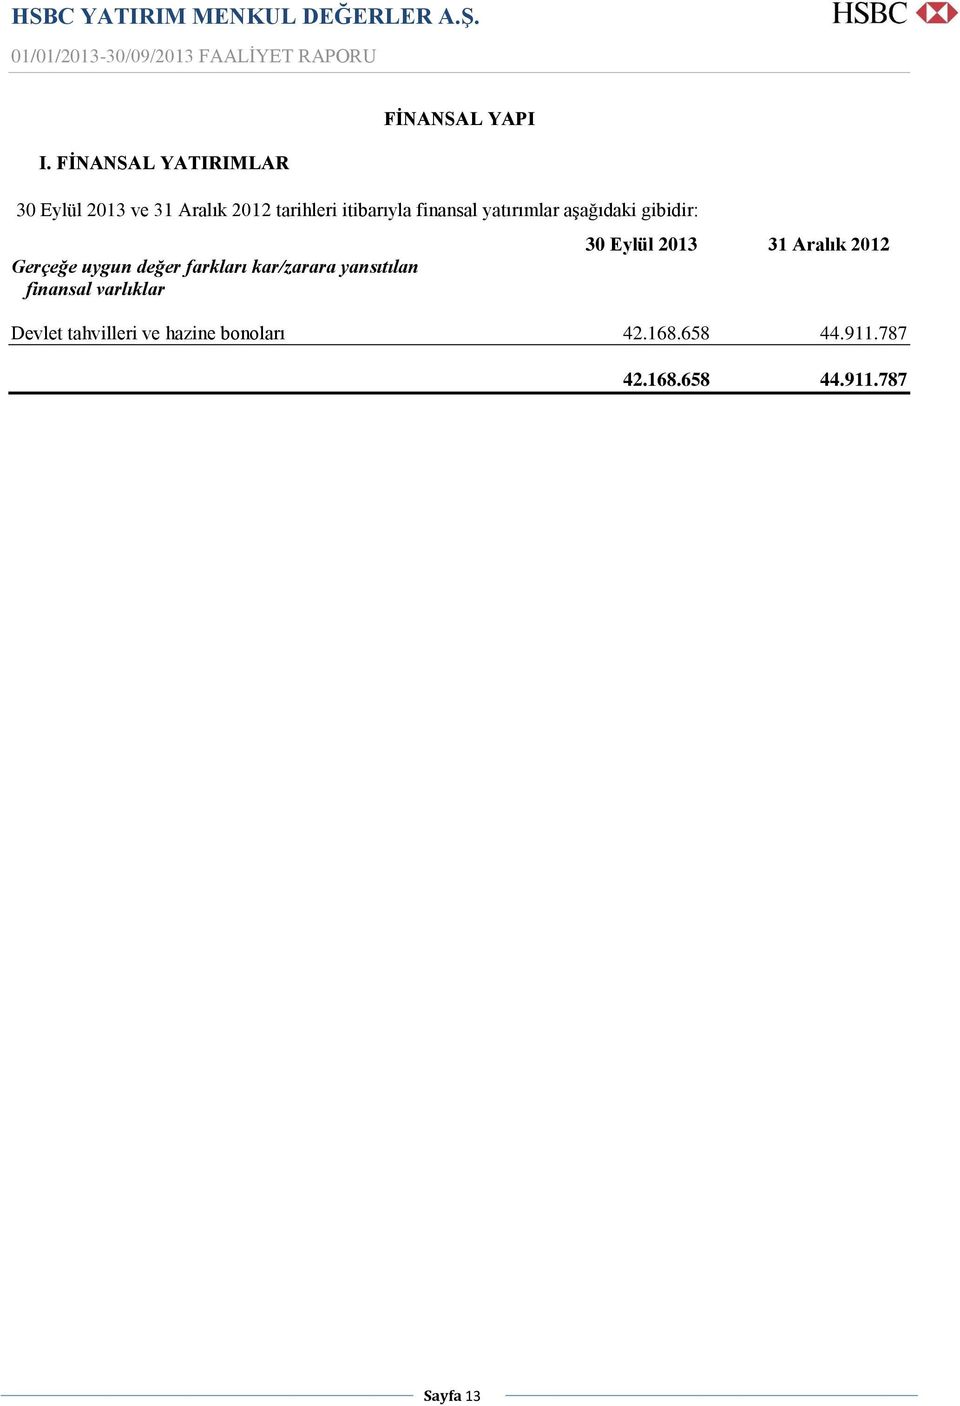 kar/zarara yansıtılan finansal varlıklar 30 Eylül 2013 31 Aralık 2012 Devlet